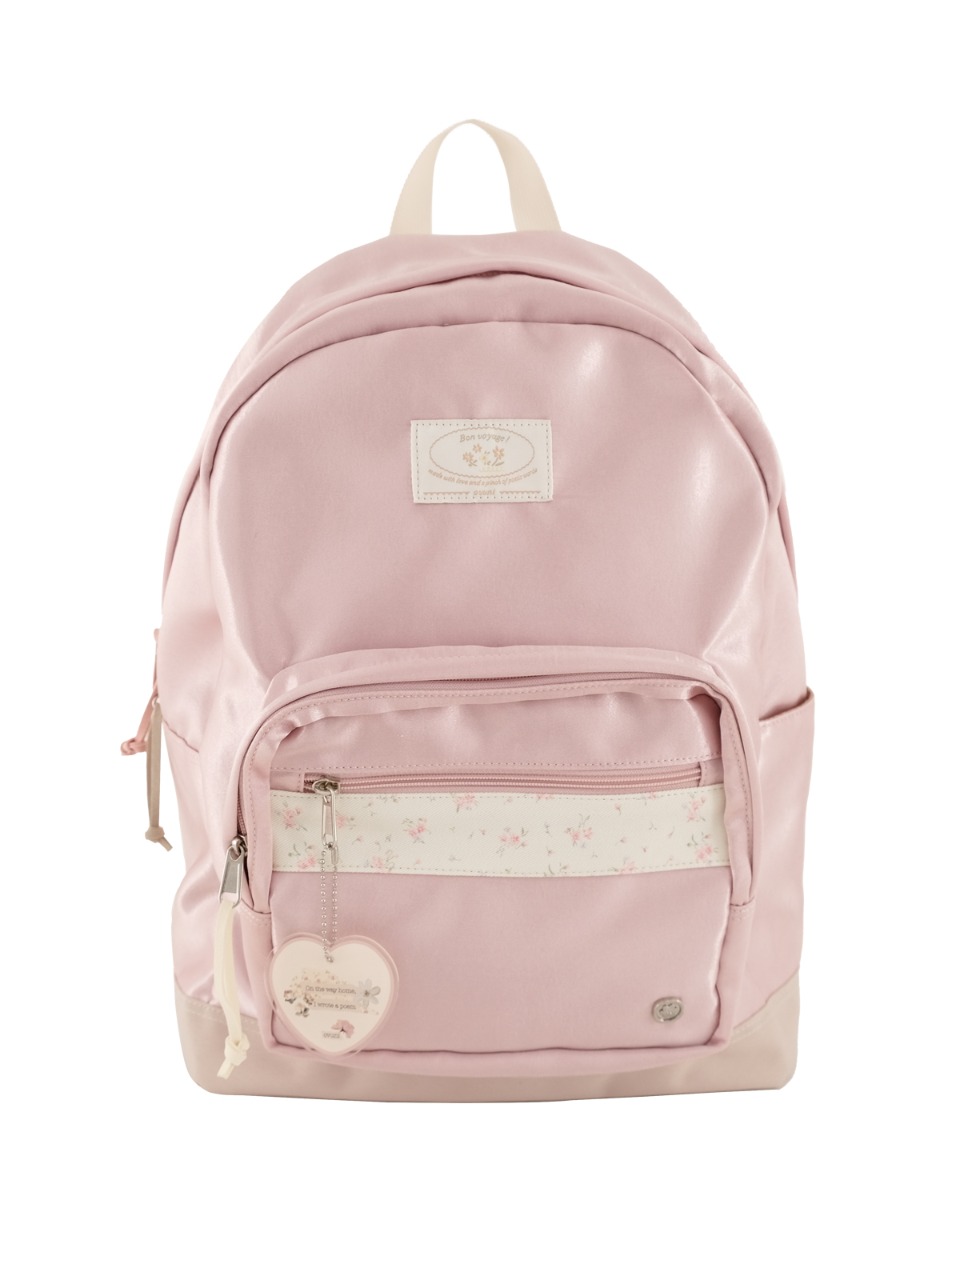 Bon voyage backpack - rose pink - ovuni